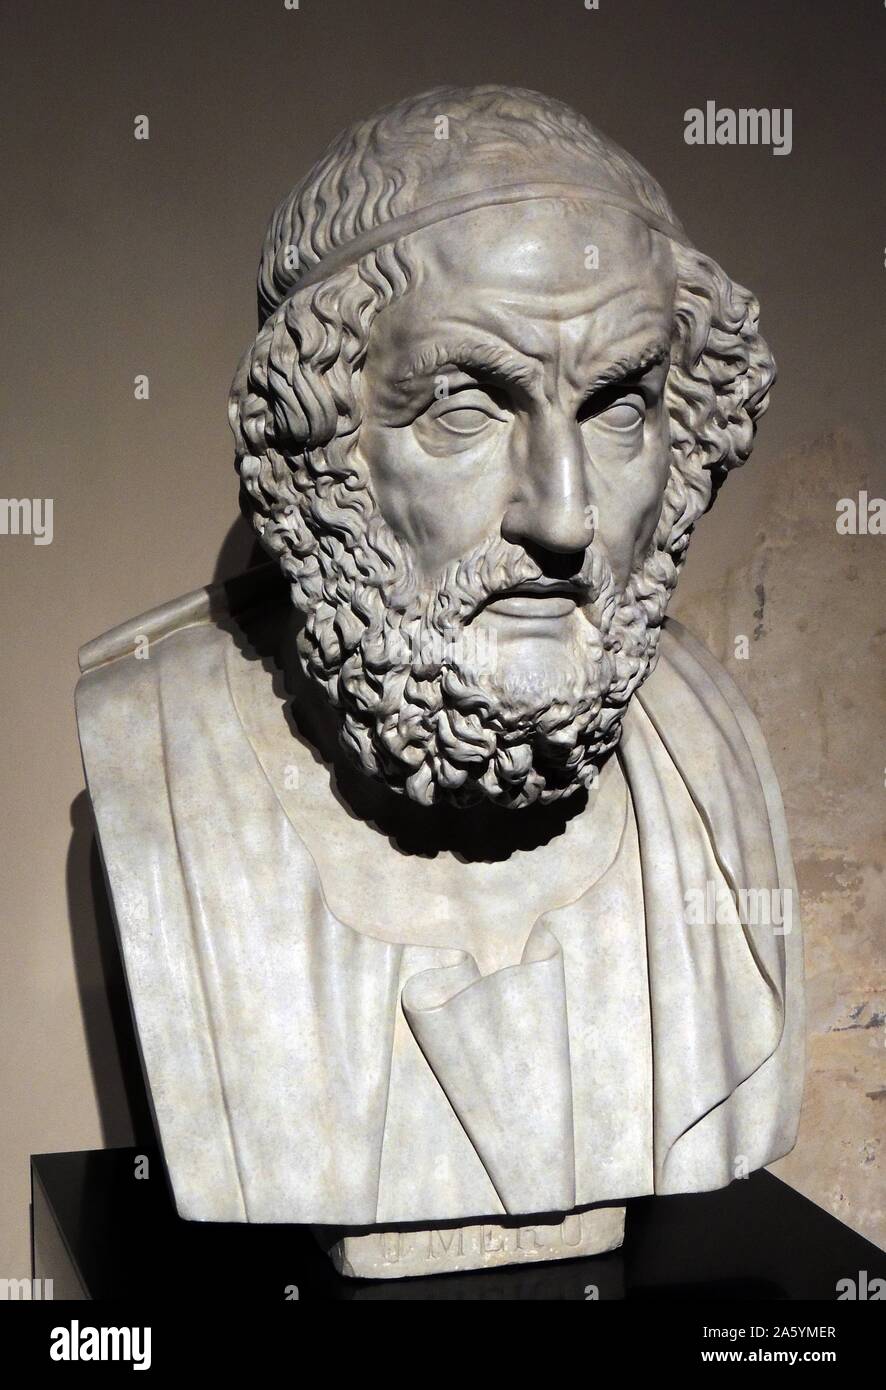 Buste du poète aveugle Homère dans l'ouest de tradition classique, Homer est l'auteur de l'Iliade et l'Odyssée et est vénéré comme le plus grand poète épique grec ancien. Lorsqu'il a vécu est inconnue mais Hérodote estime qu'il est autour de 850 avant JC. Banque D'Images